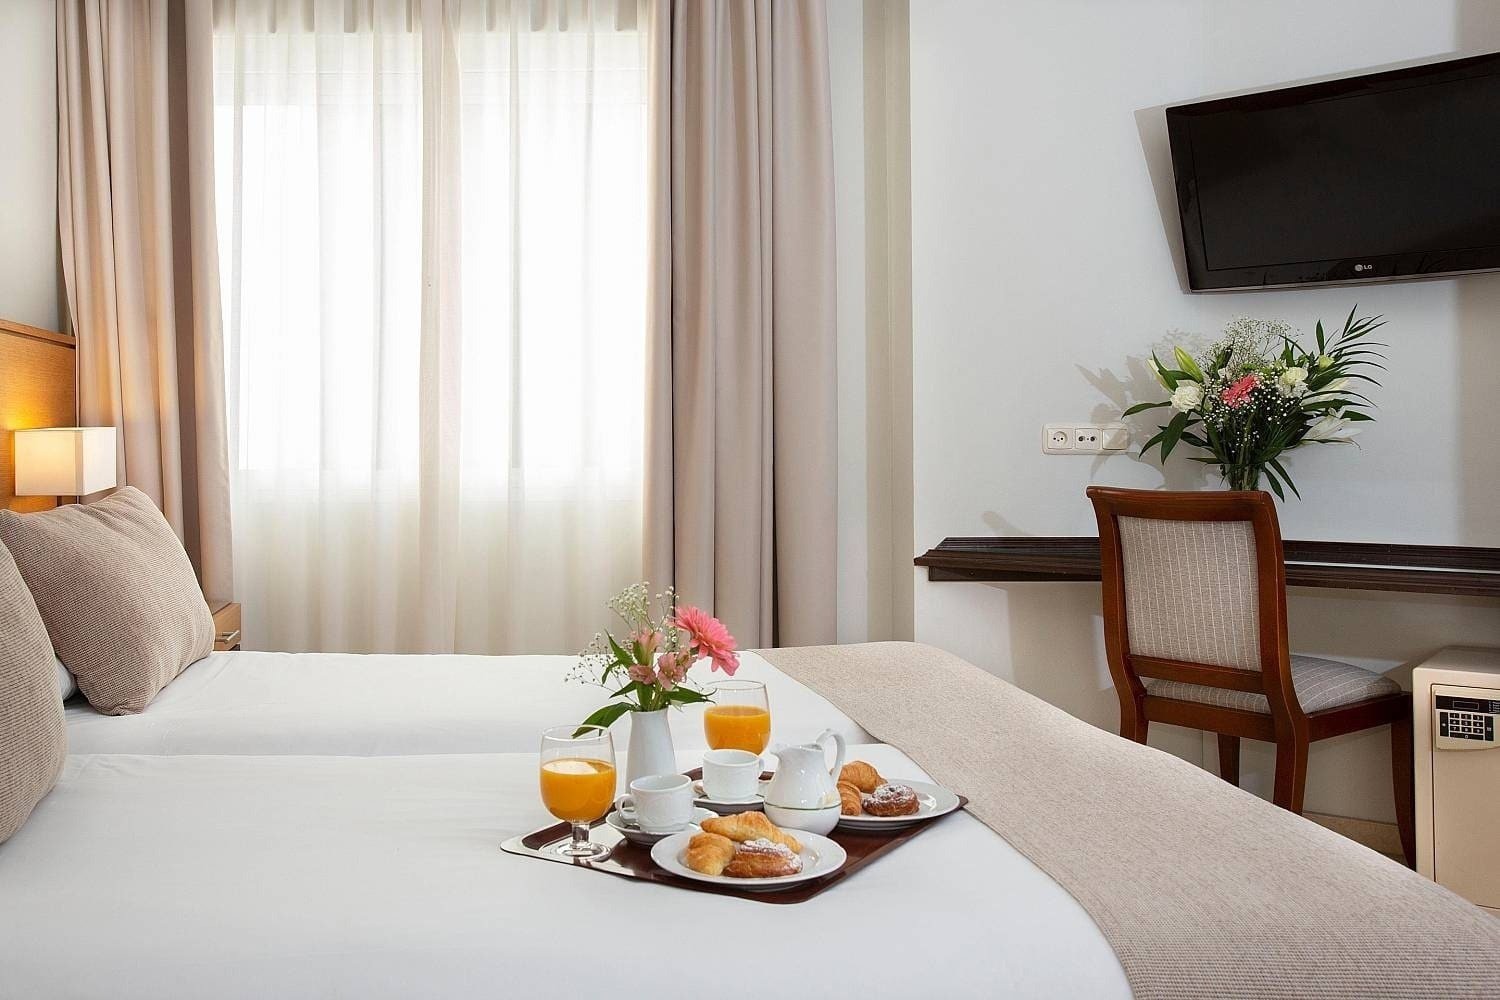 Detalle de cama doble del Hotel Ona Alanda Club Marbella